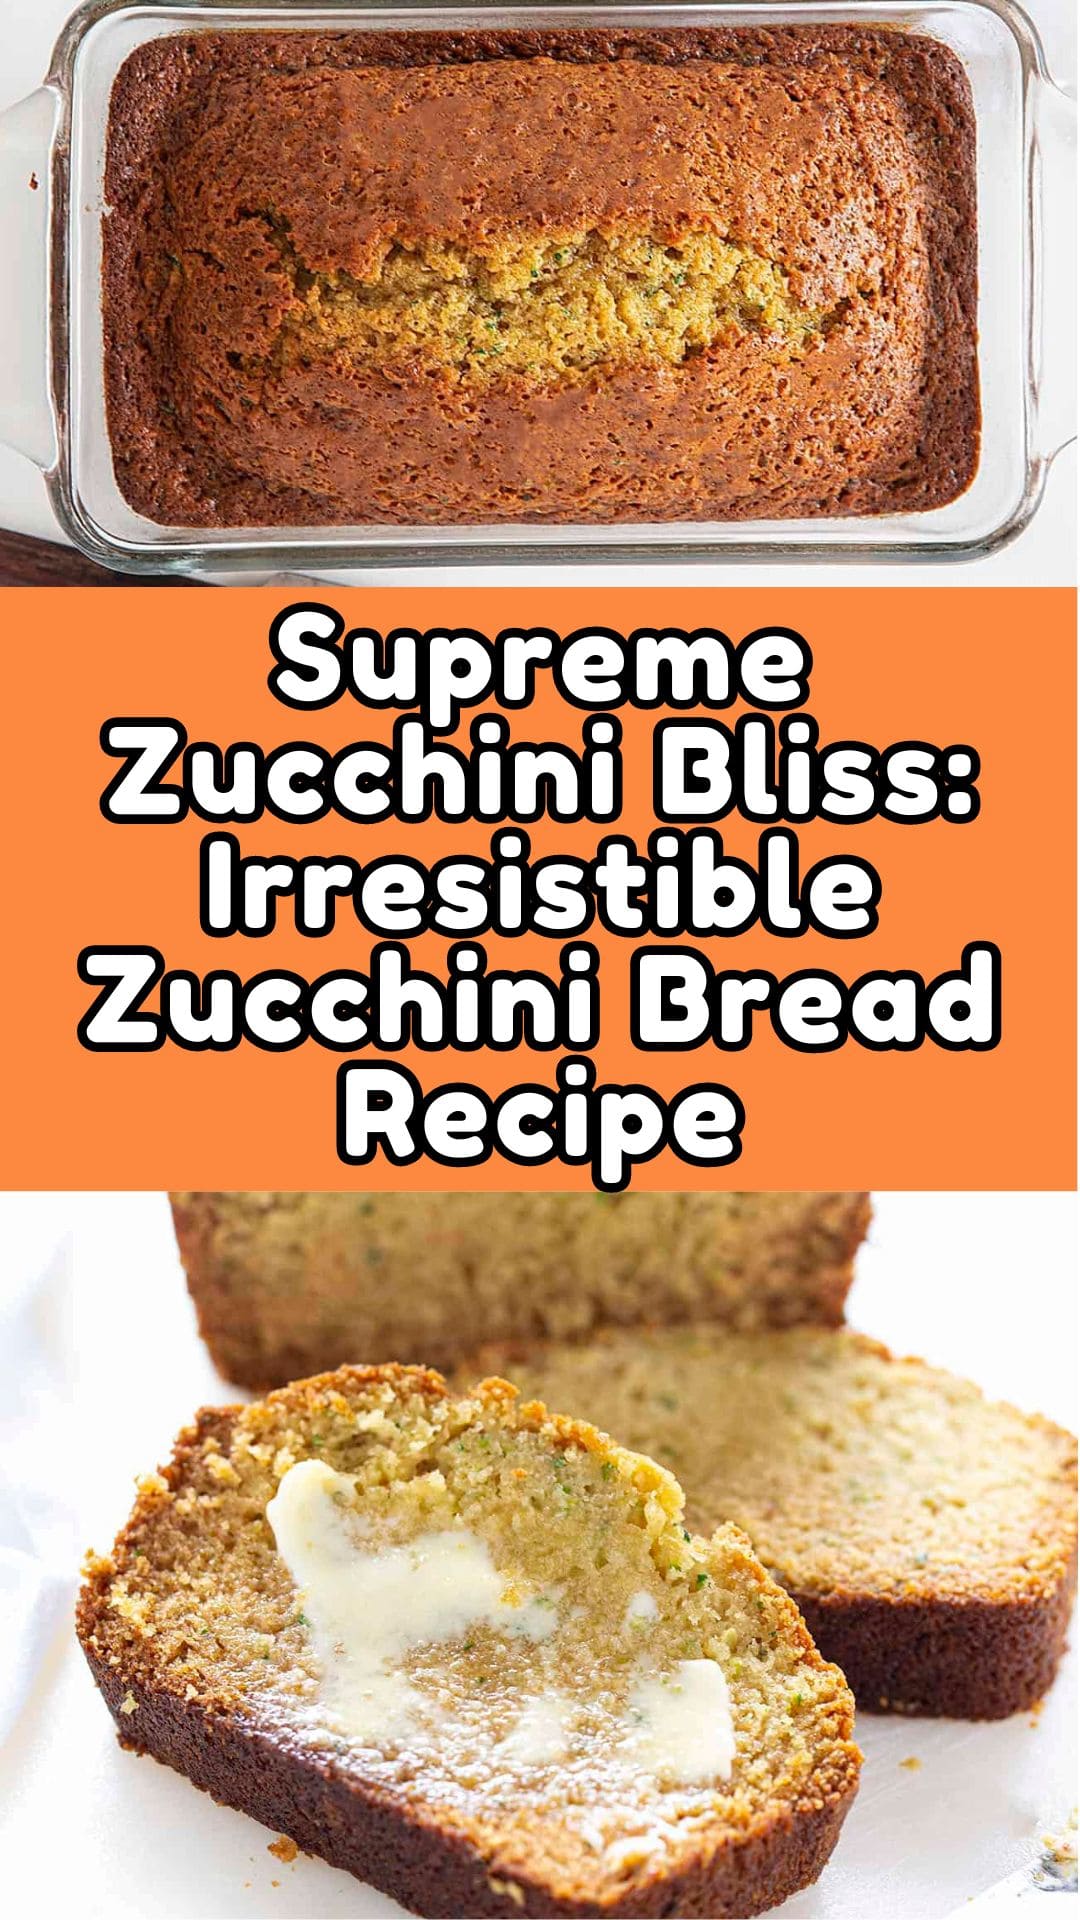 Supreme Zucchini Bliss: Irresistible Zucchini Bread Recipe